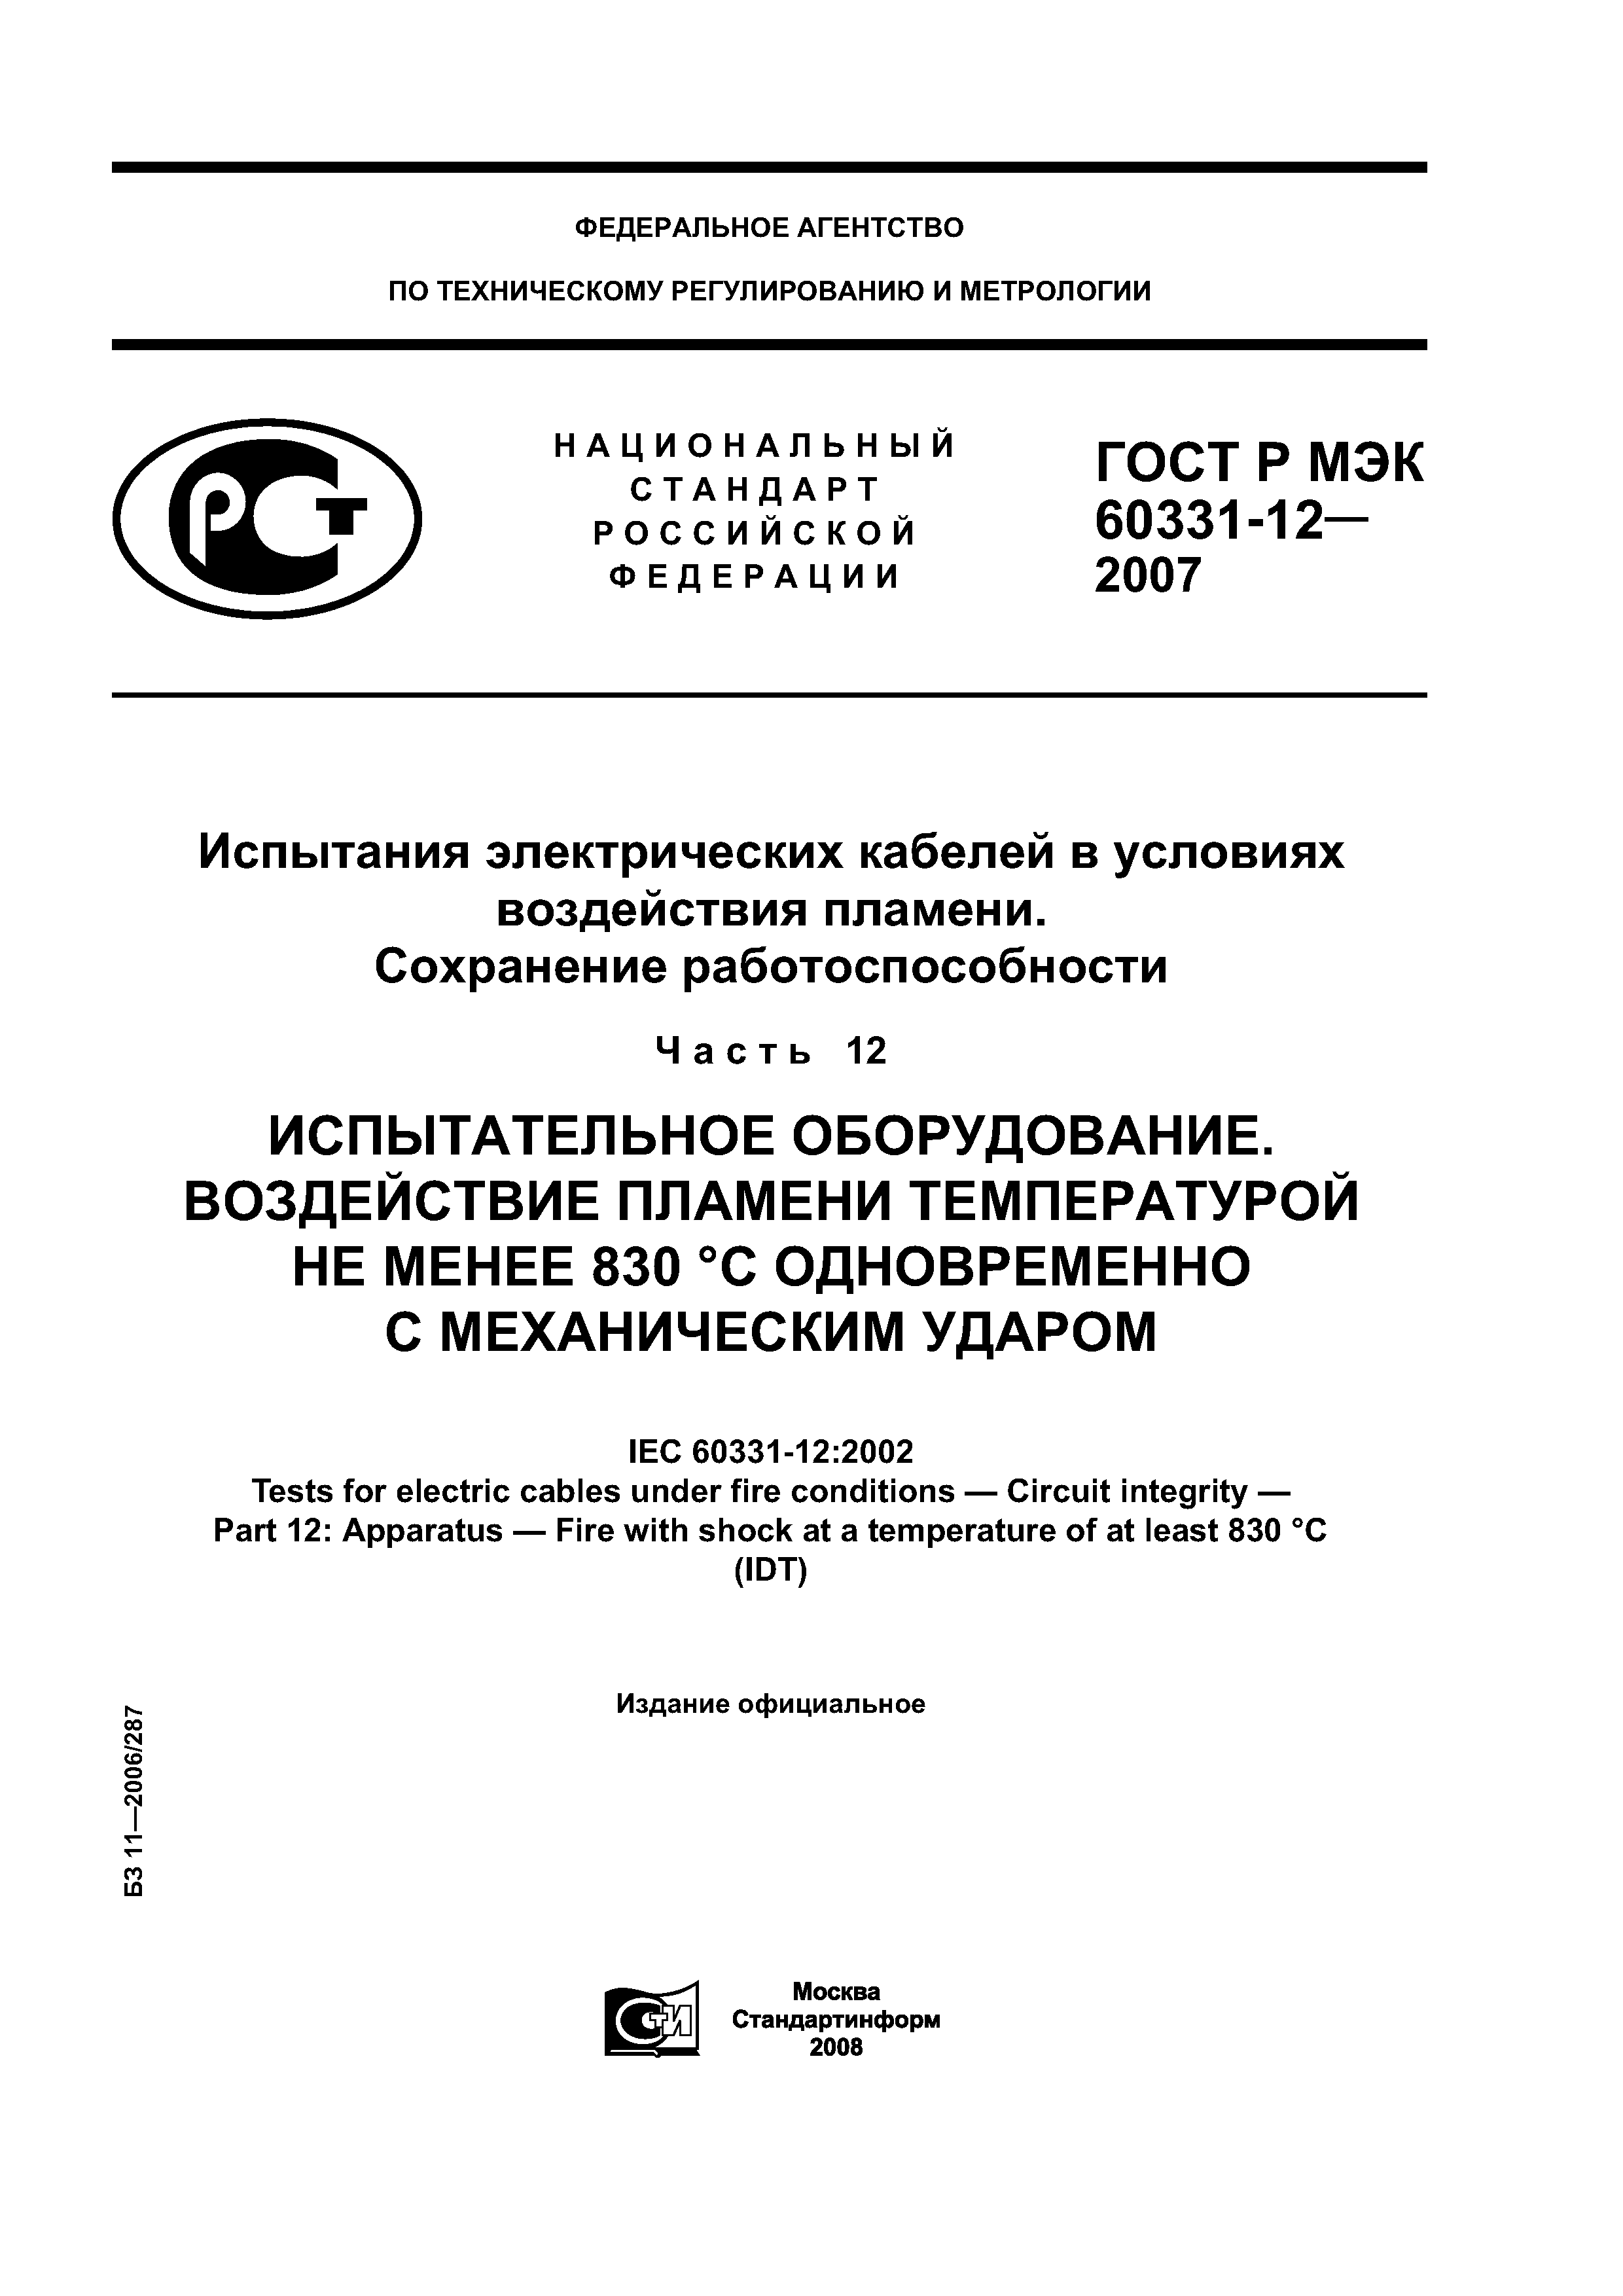 ГОСТ Р МЭК 60331-12-2007